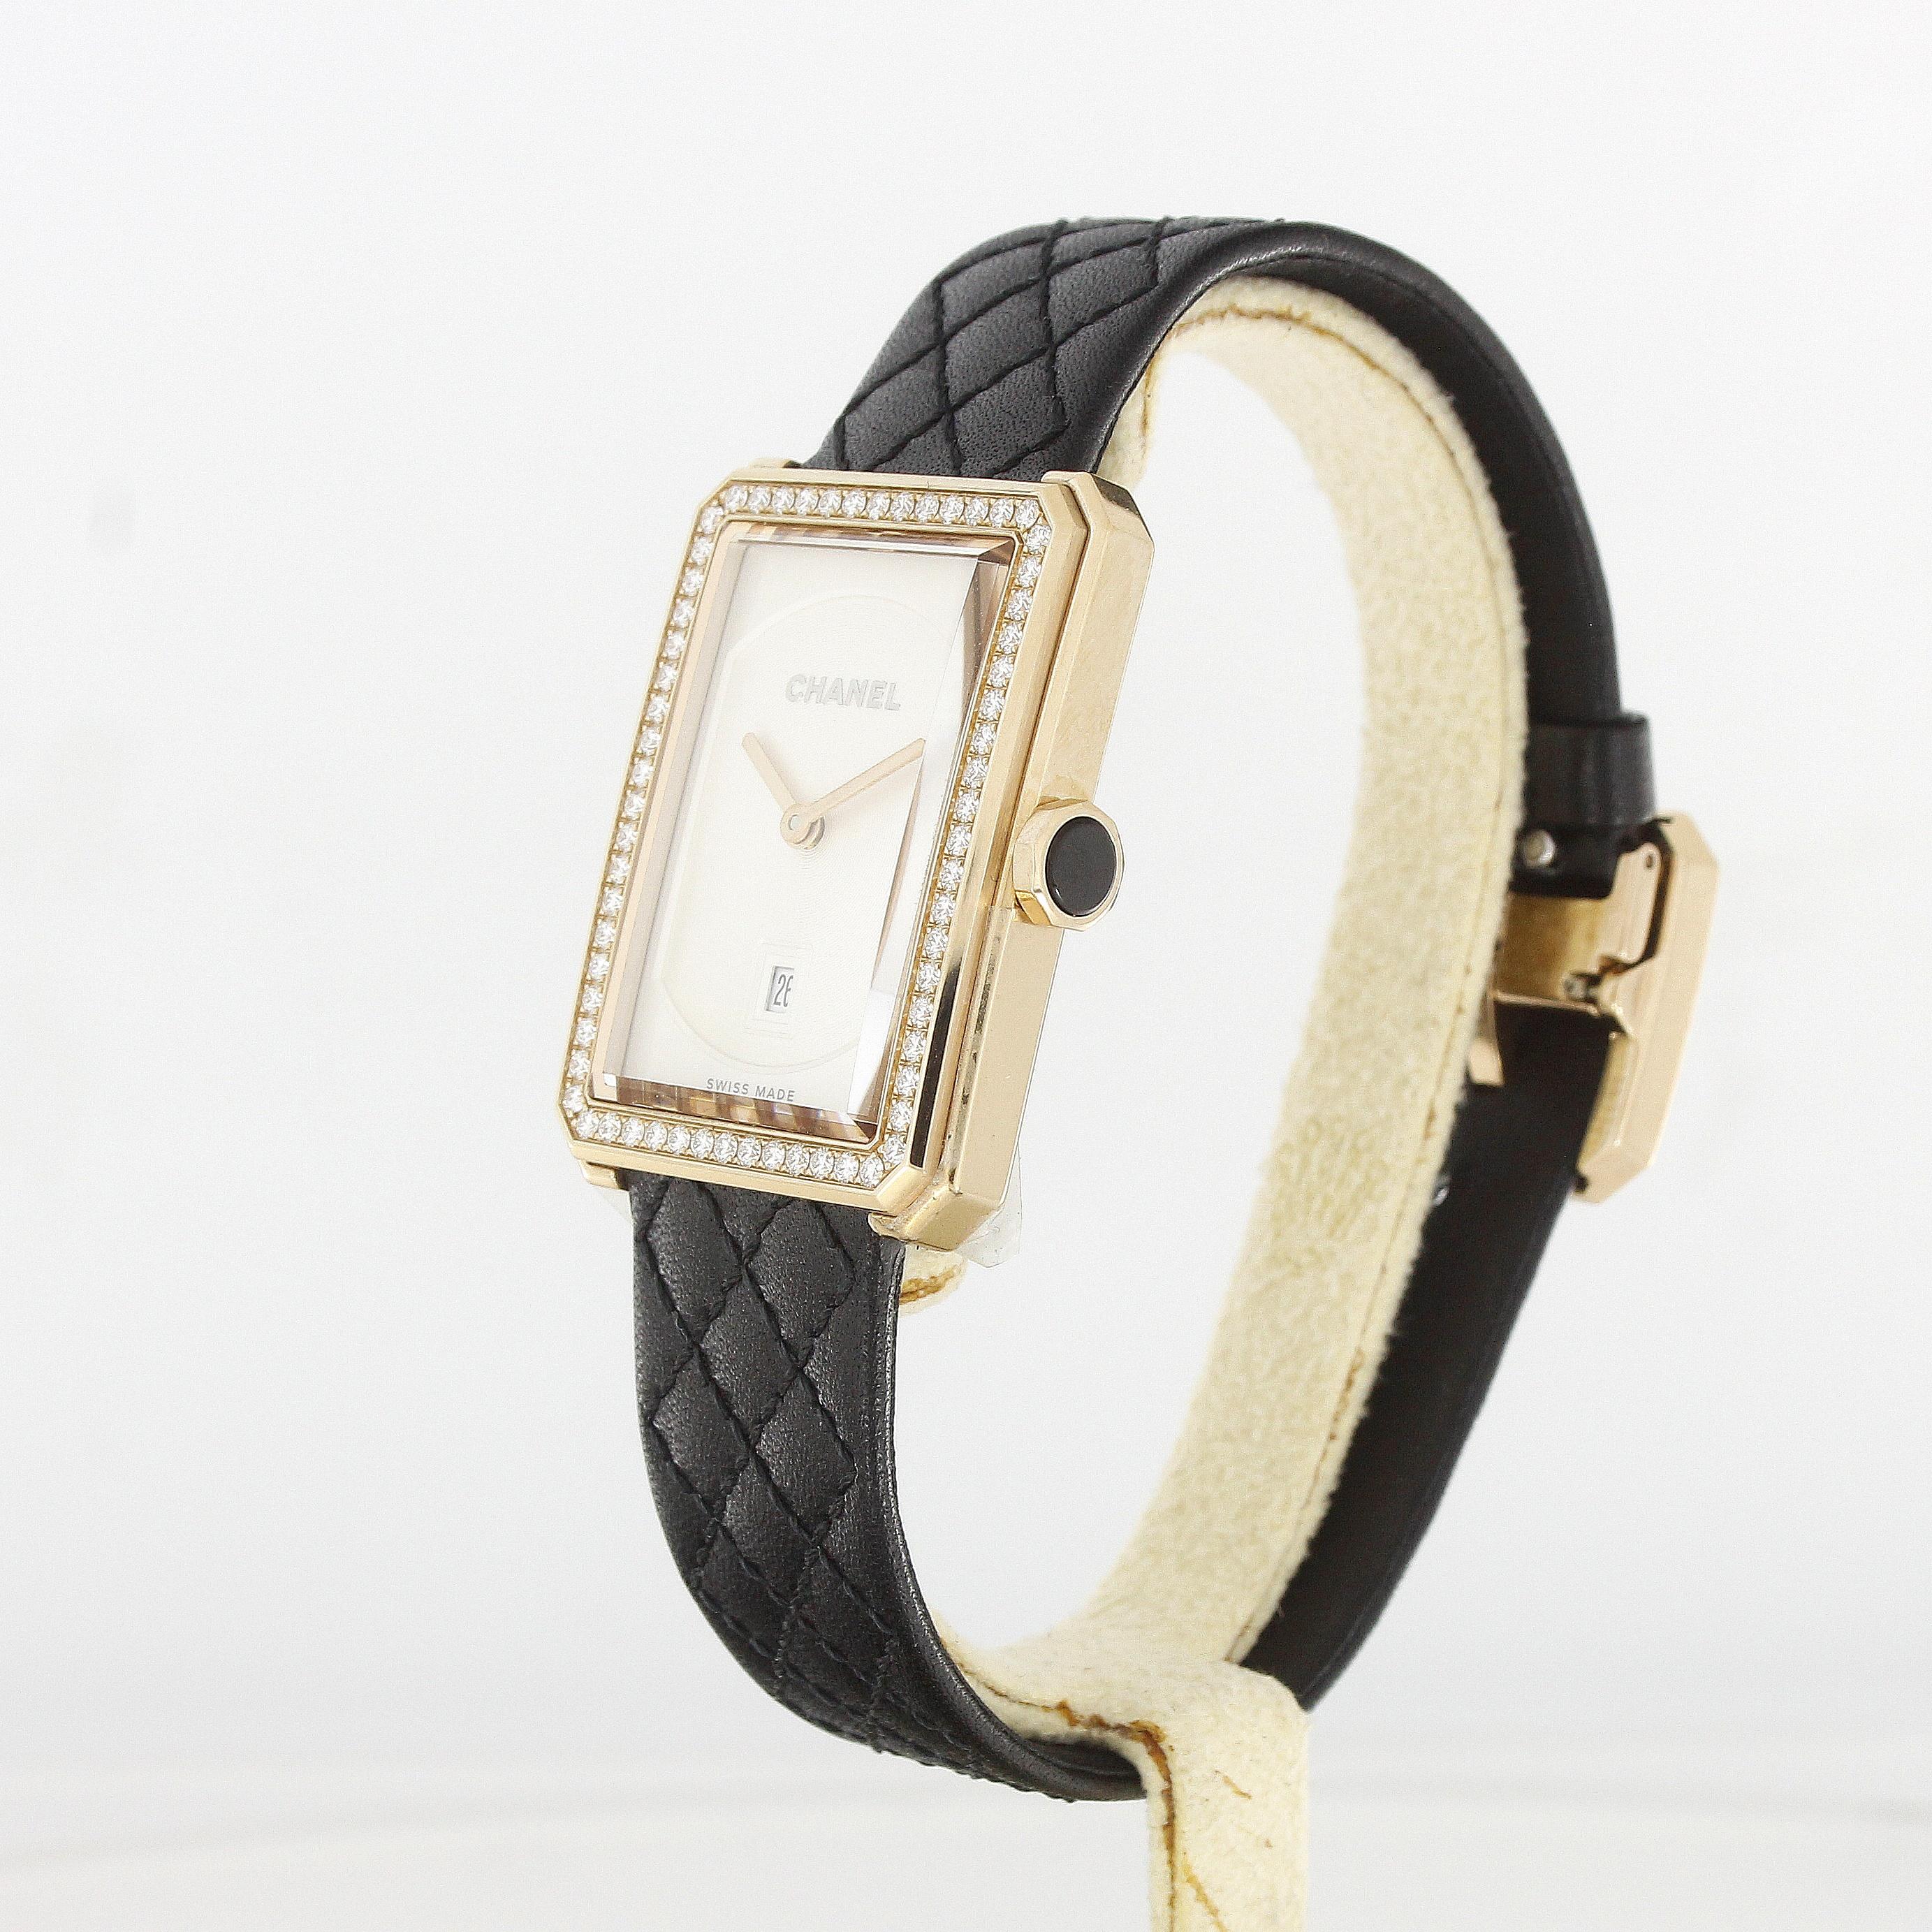 Chanel Boy-Friend Damen-Armbanduhr Rose Gold Diamanten

Referenz: H6591
MATERIAL: 18k Rose Gold
Uhrwerk: Quarz
Abmessungen: 34,6 x 26,7 x 7,3 mm
Zifferblatt: Weiß
Armbänder: Leder mit roségoldener Diamantschließe
Zubehör: Box & Original-Zertifikat